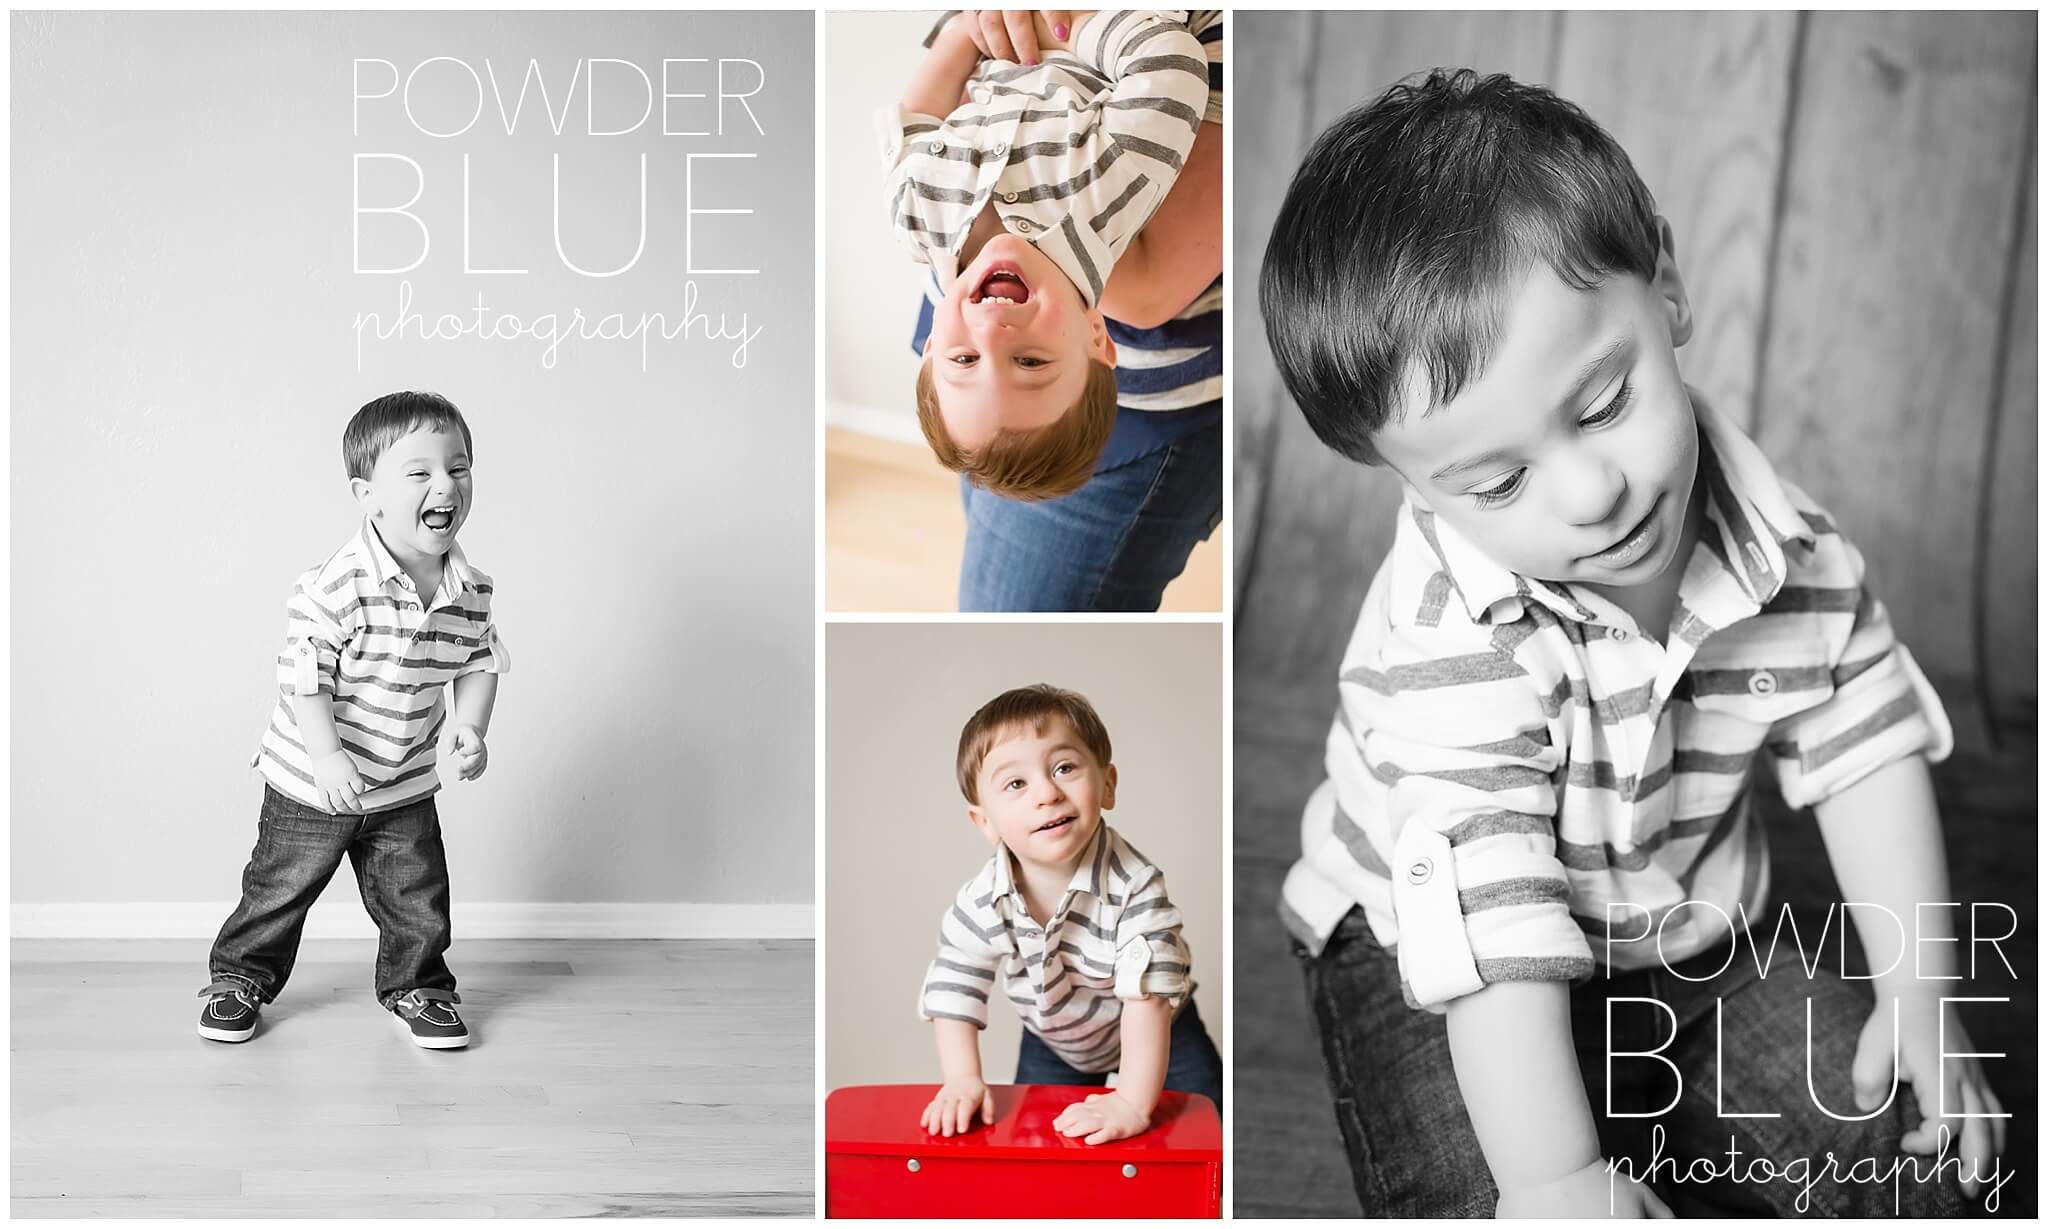 (C) 2014 Powder Blue Photography. www.powderbluephoto.com